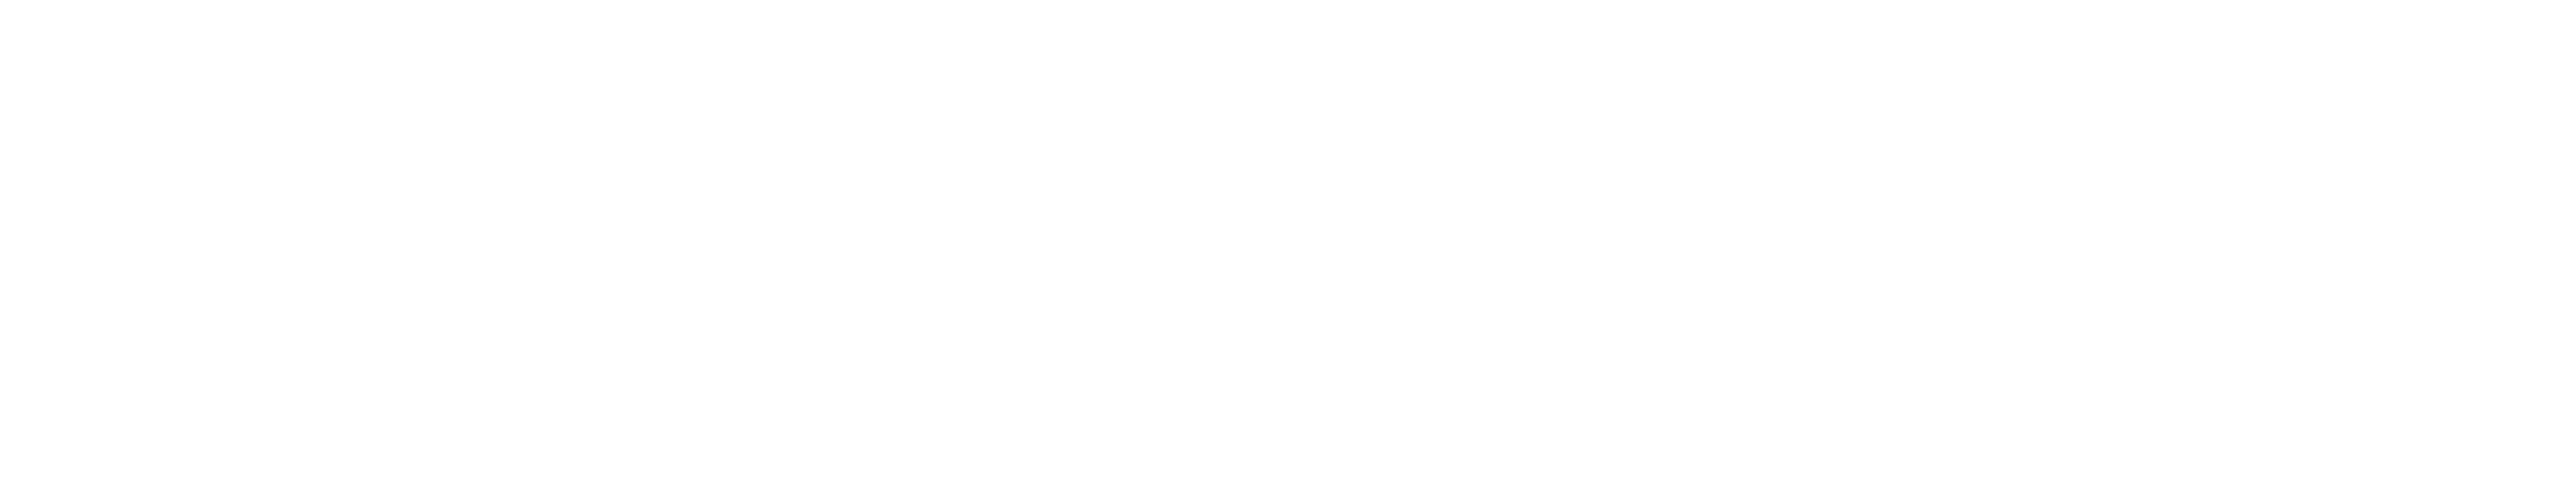 Suzuki_